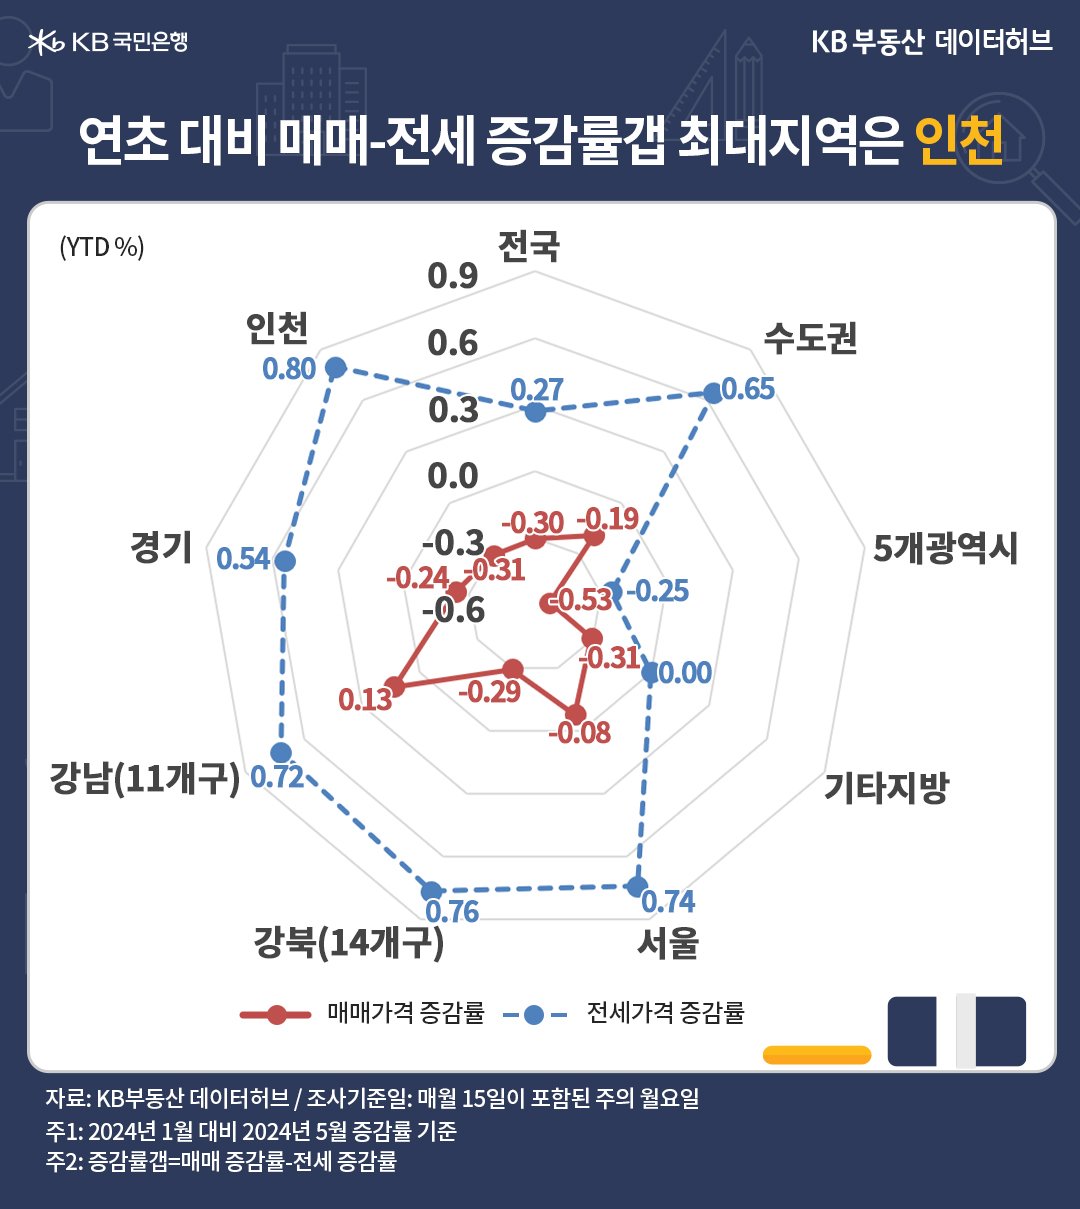 강북권의 매매-전세 간 증감률갭이 컸지만, 1위를 2주 연속 '인천'에 내주면서 2위를 유지했다는 내용이 담긴 그래프이다.